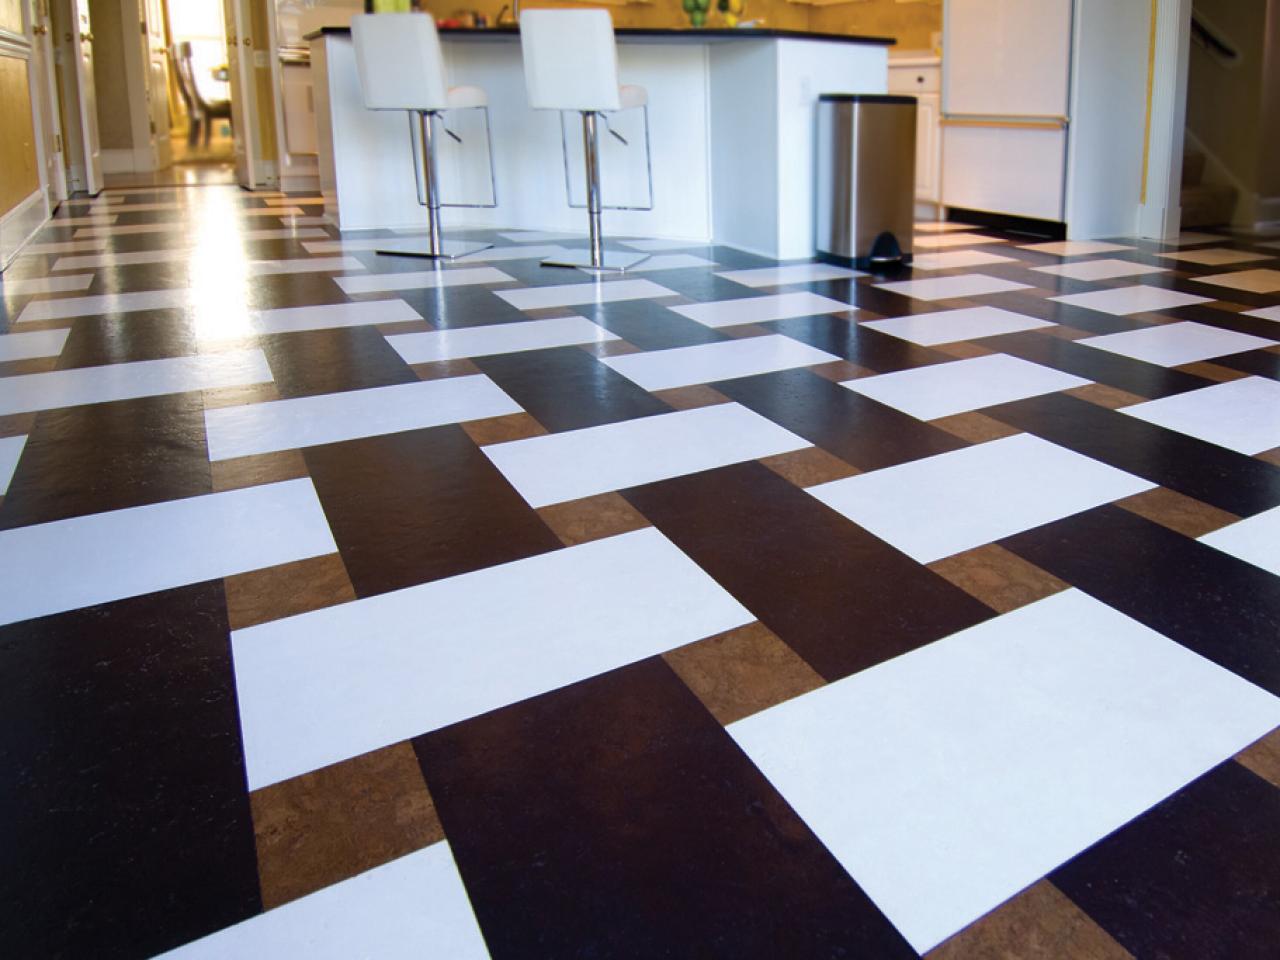 Cork Flooring In Basements, Is Ceramic Tile Good For Basement Floors